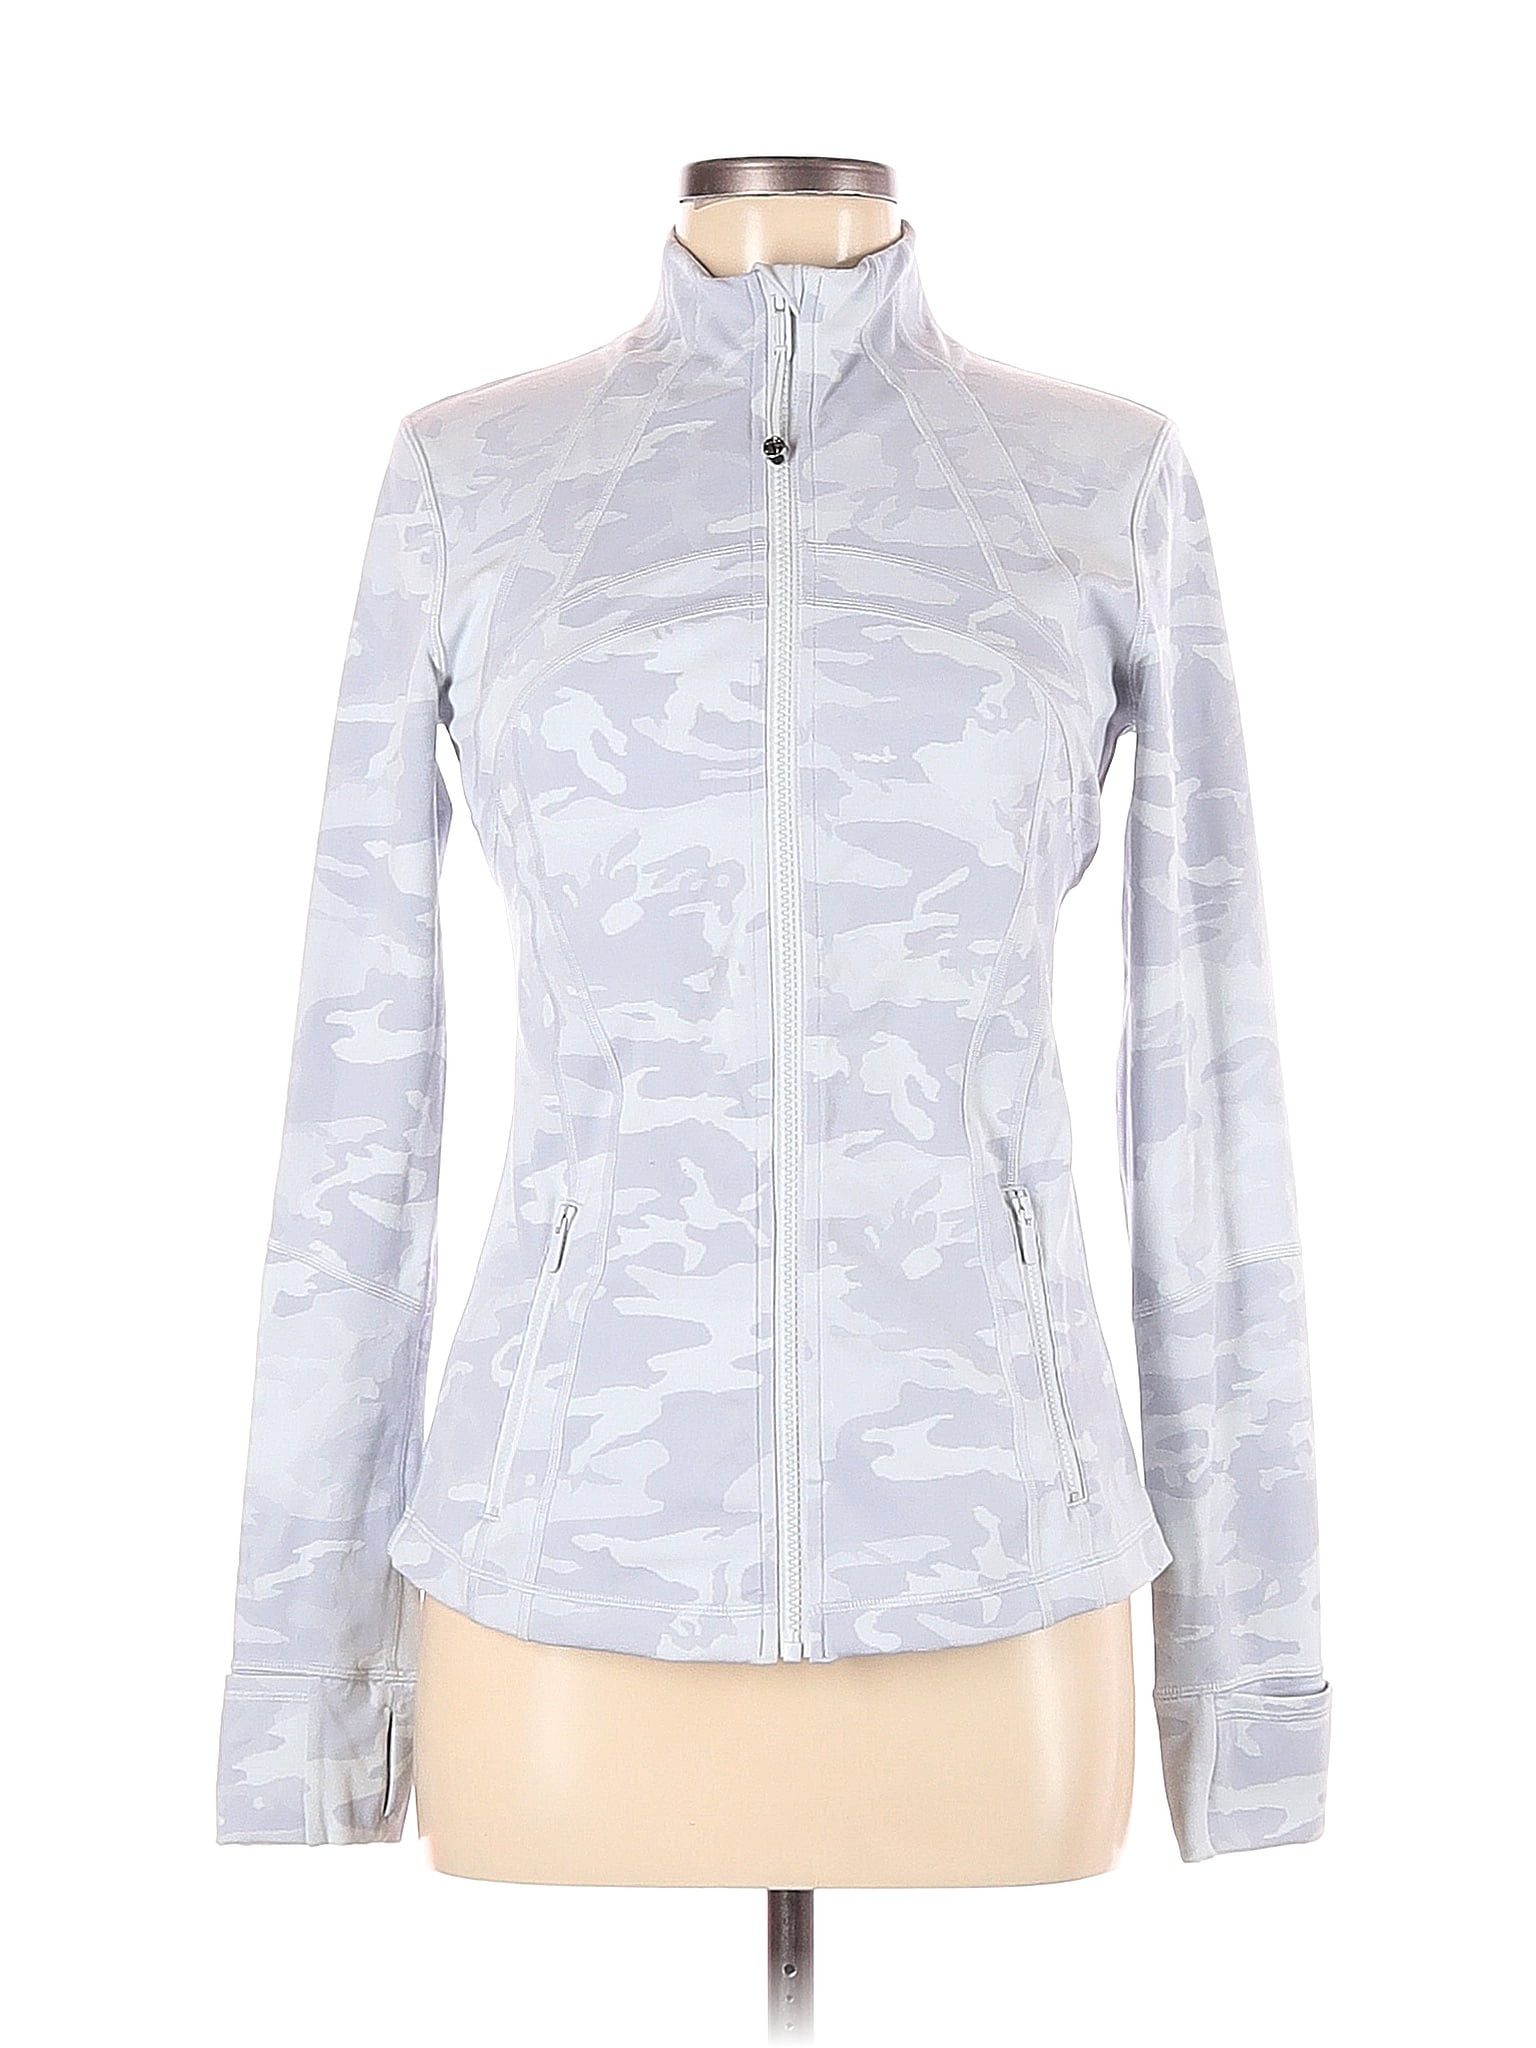 Lululemon Define Jacket *Luxtreme Incognito Camo Jacquard Alpine White  Size: 10